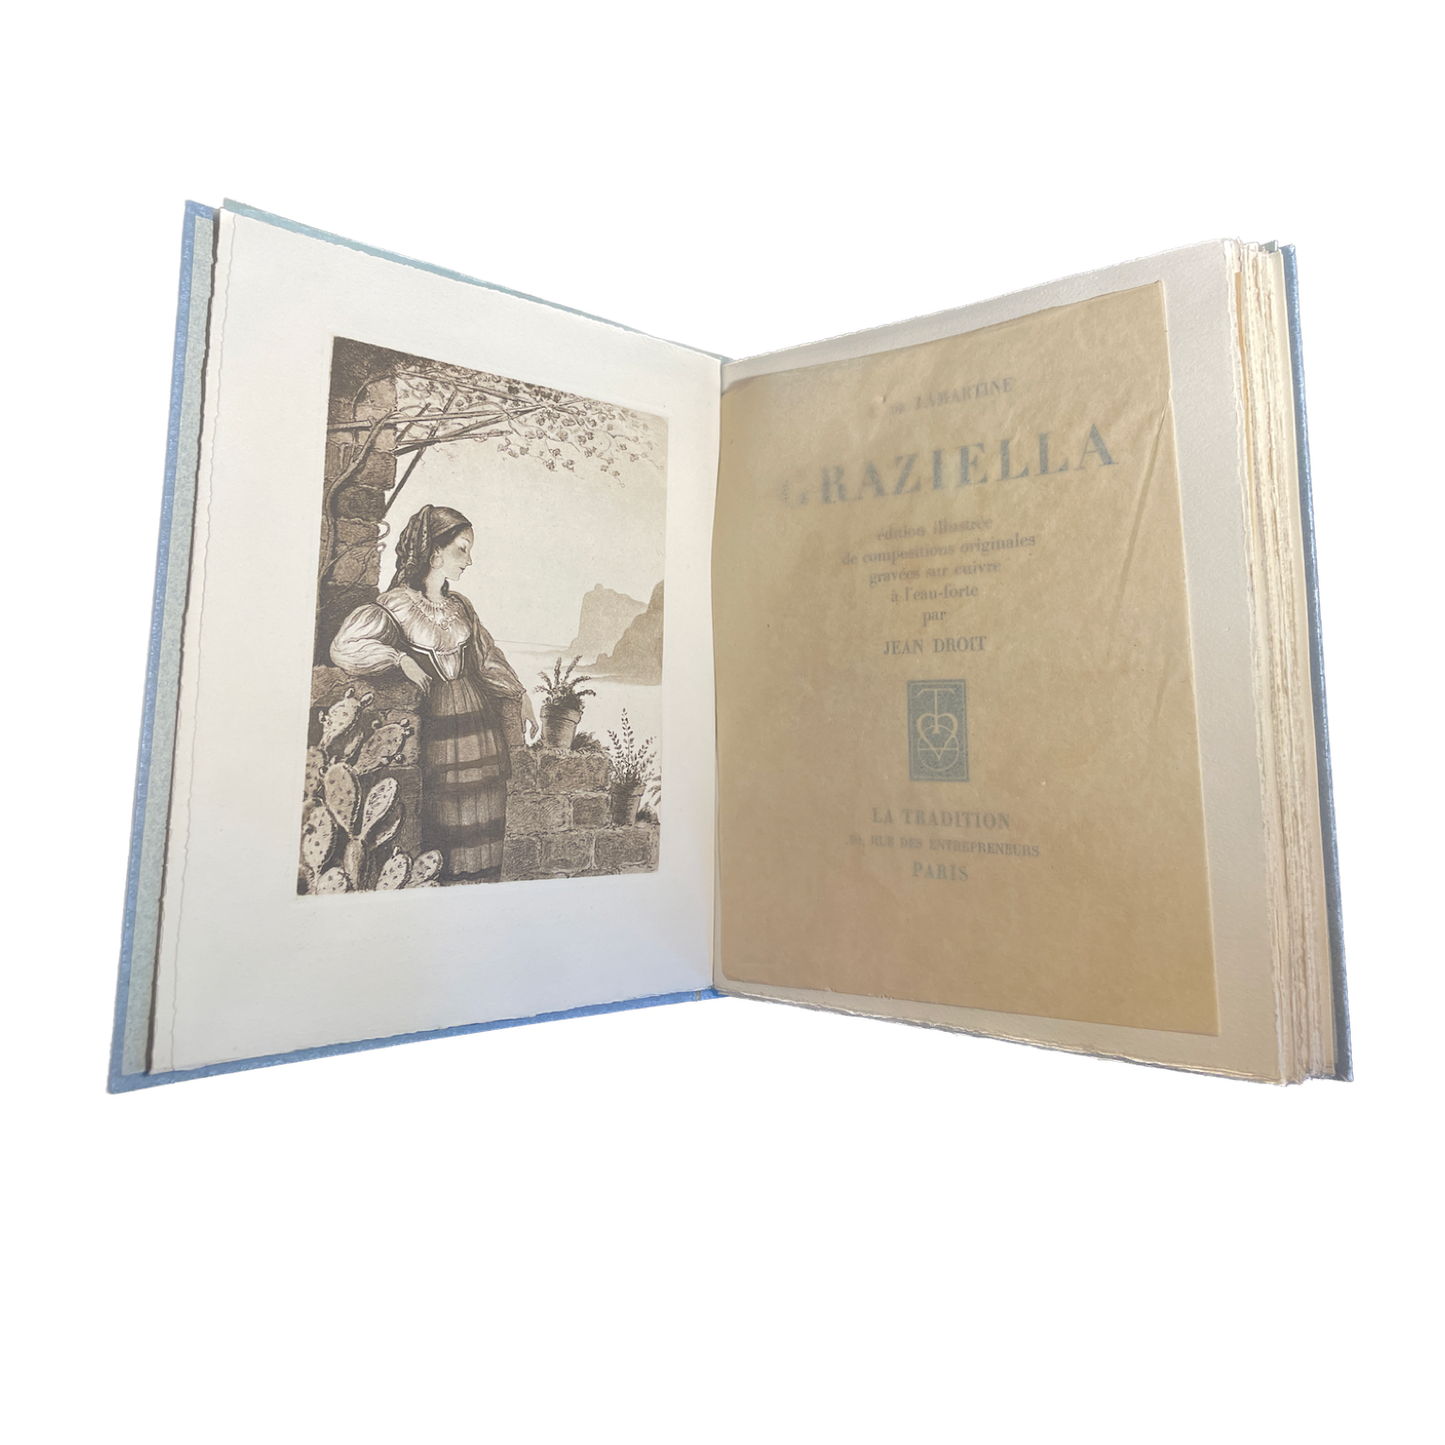 1942 - LAMARTINE (Alphonse de) - Grazziella - Edition illustrée de compositions originales gravées sur cuivre à l'eau-forte par Jean Droit